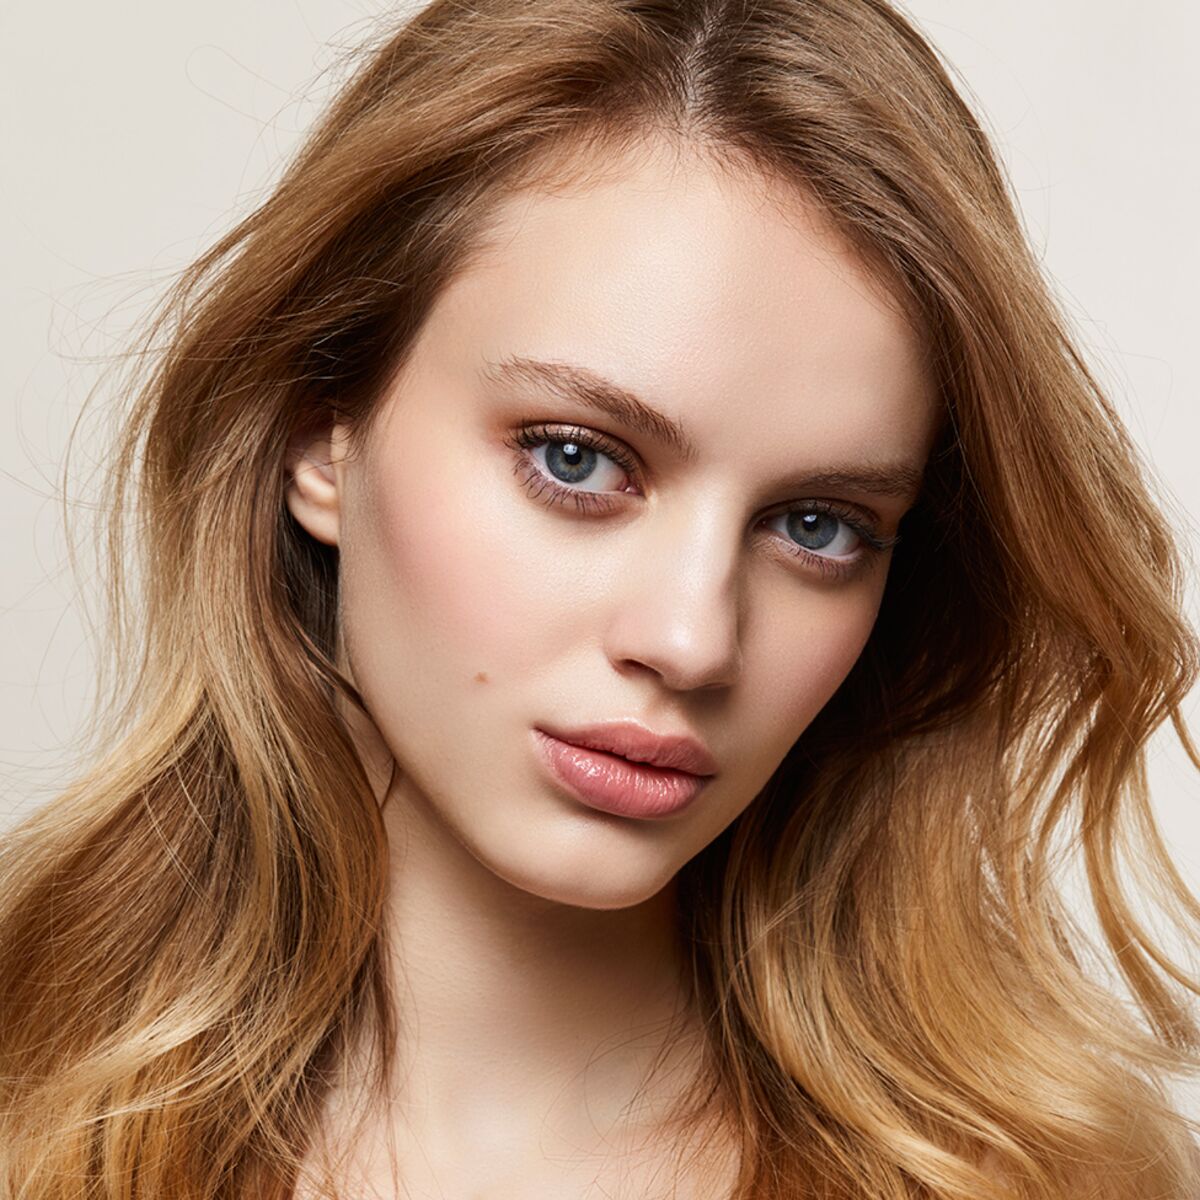 Maquillage des yeux : la tendance du make-up doré : Femme Actuelle